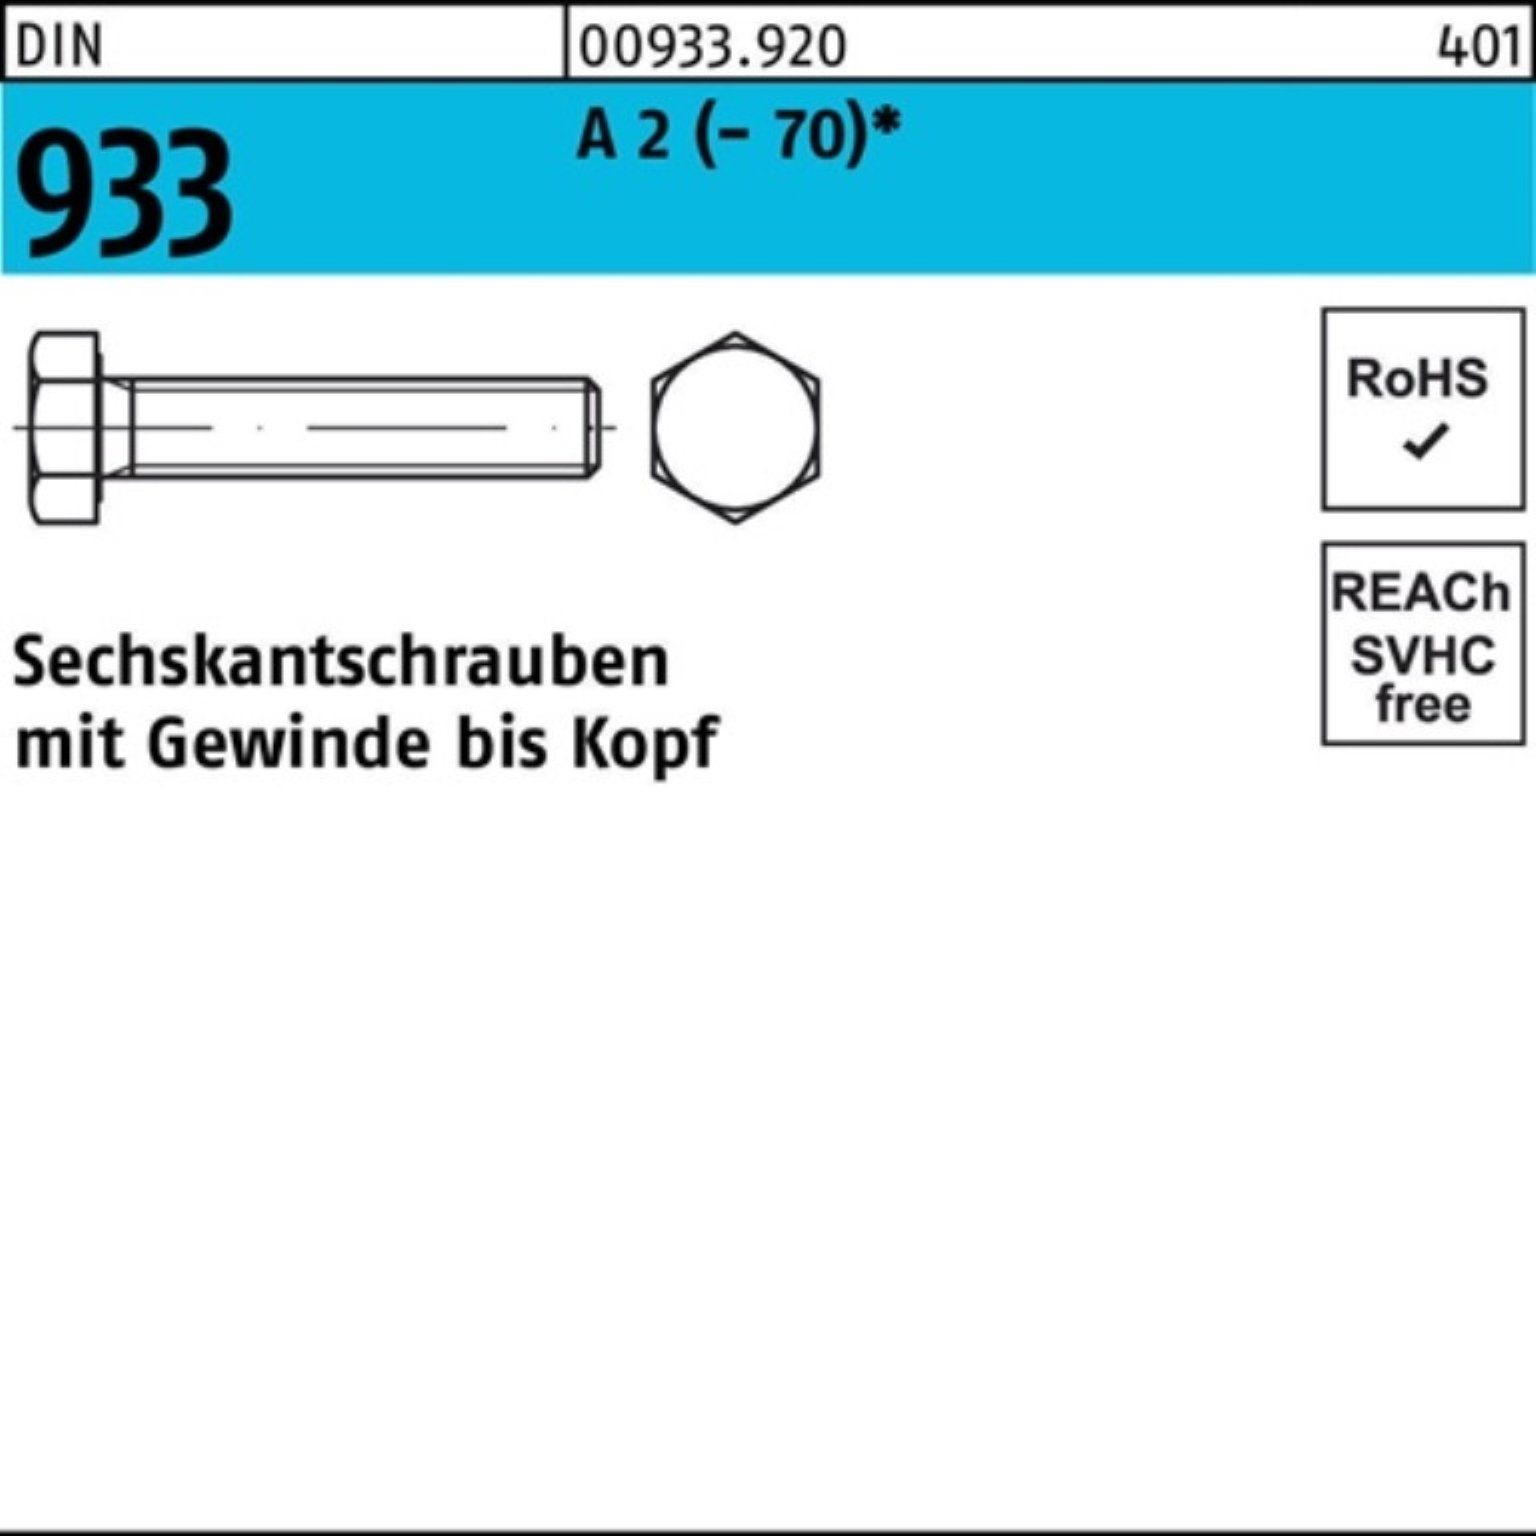 Reyher Sechskantschraube 933 (70) 2 120 VG M24x Stück Pack A Sechskantschraube 100er DIN D 1